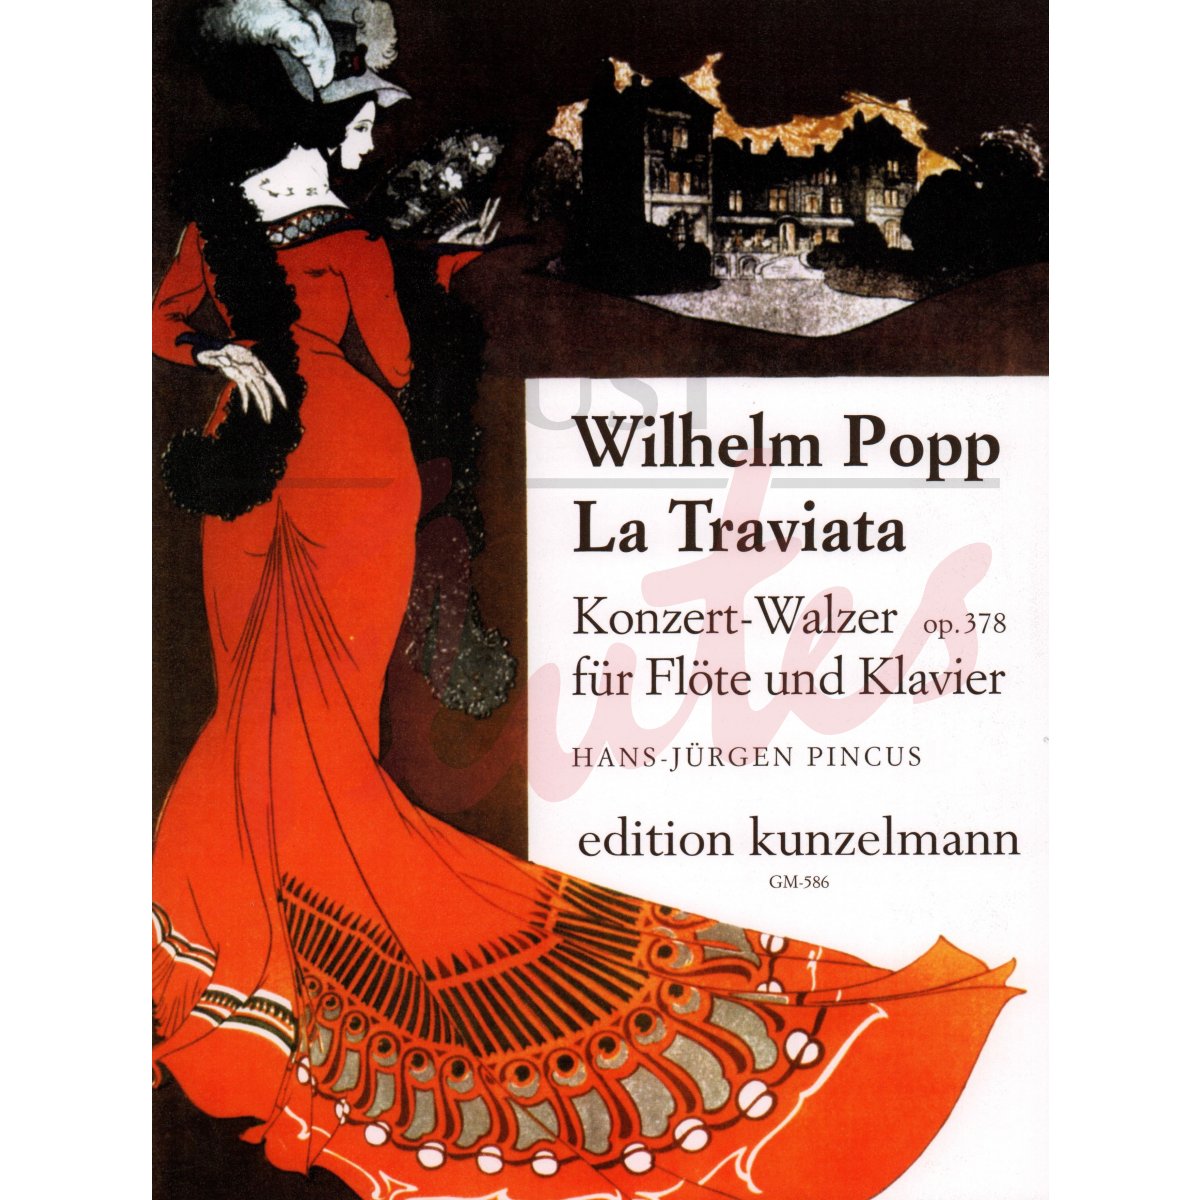 La Traviata Concert-Waltz for Flute and Piano